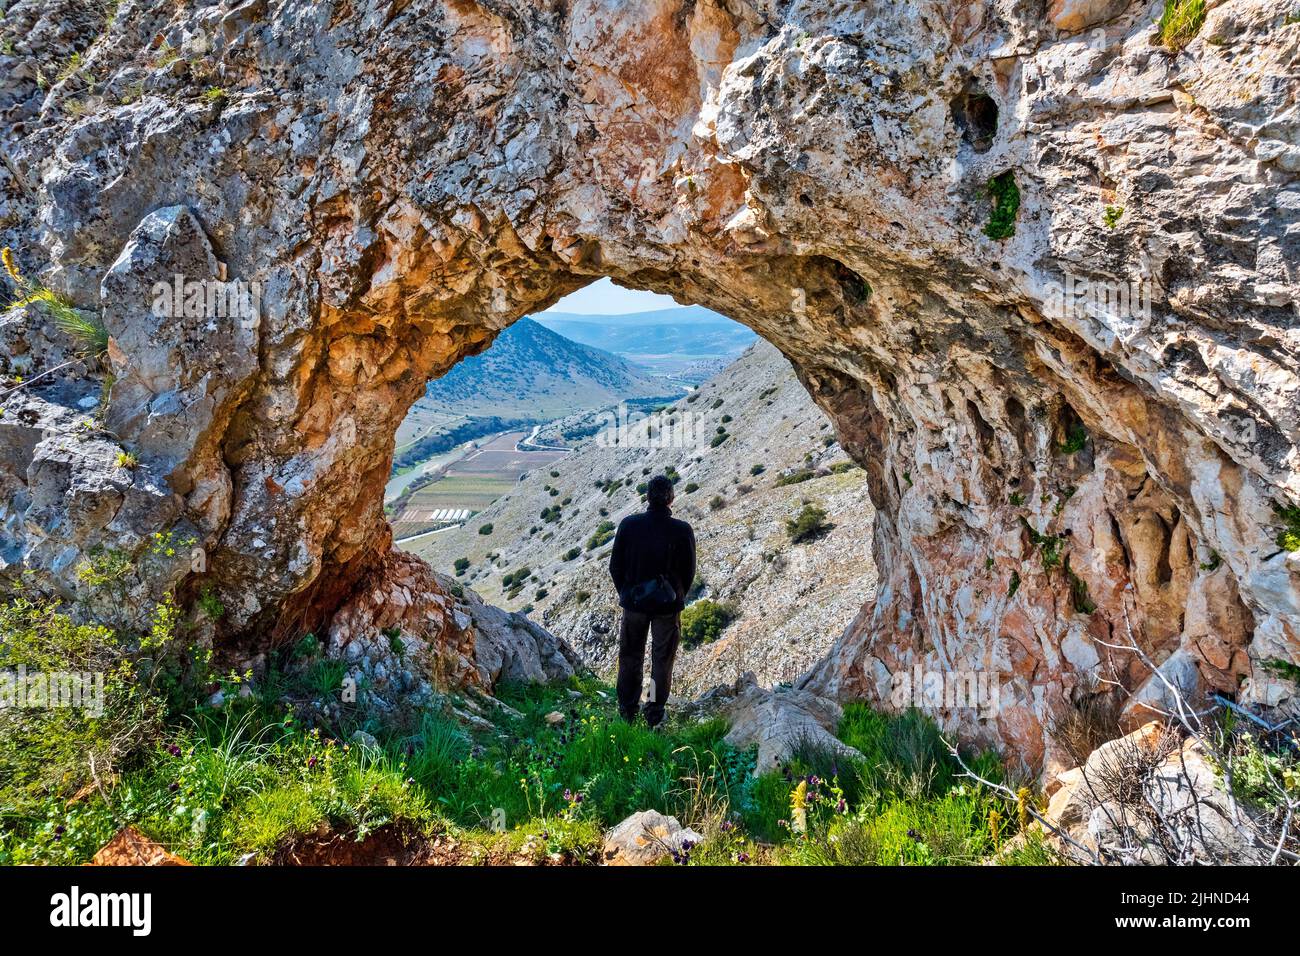 'Tripimeni' Un arco natural rocoso sobre el valle del río Xirias ('Titarisios') y la carretera Tyrnavos-Damasi. Larissa, Tesalia, Grecia. Foto de stock